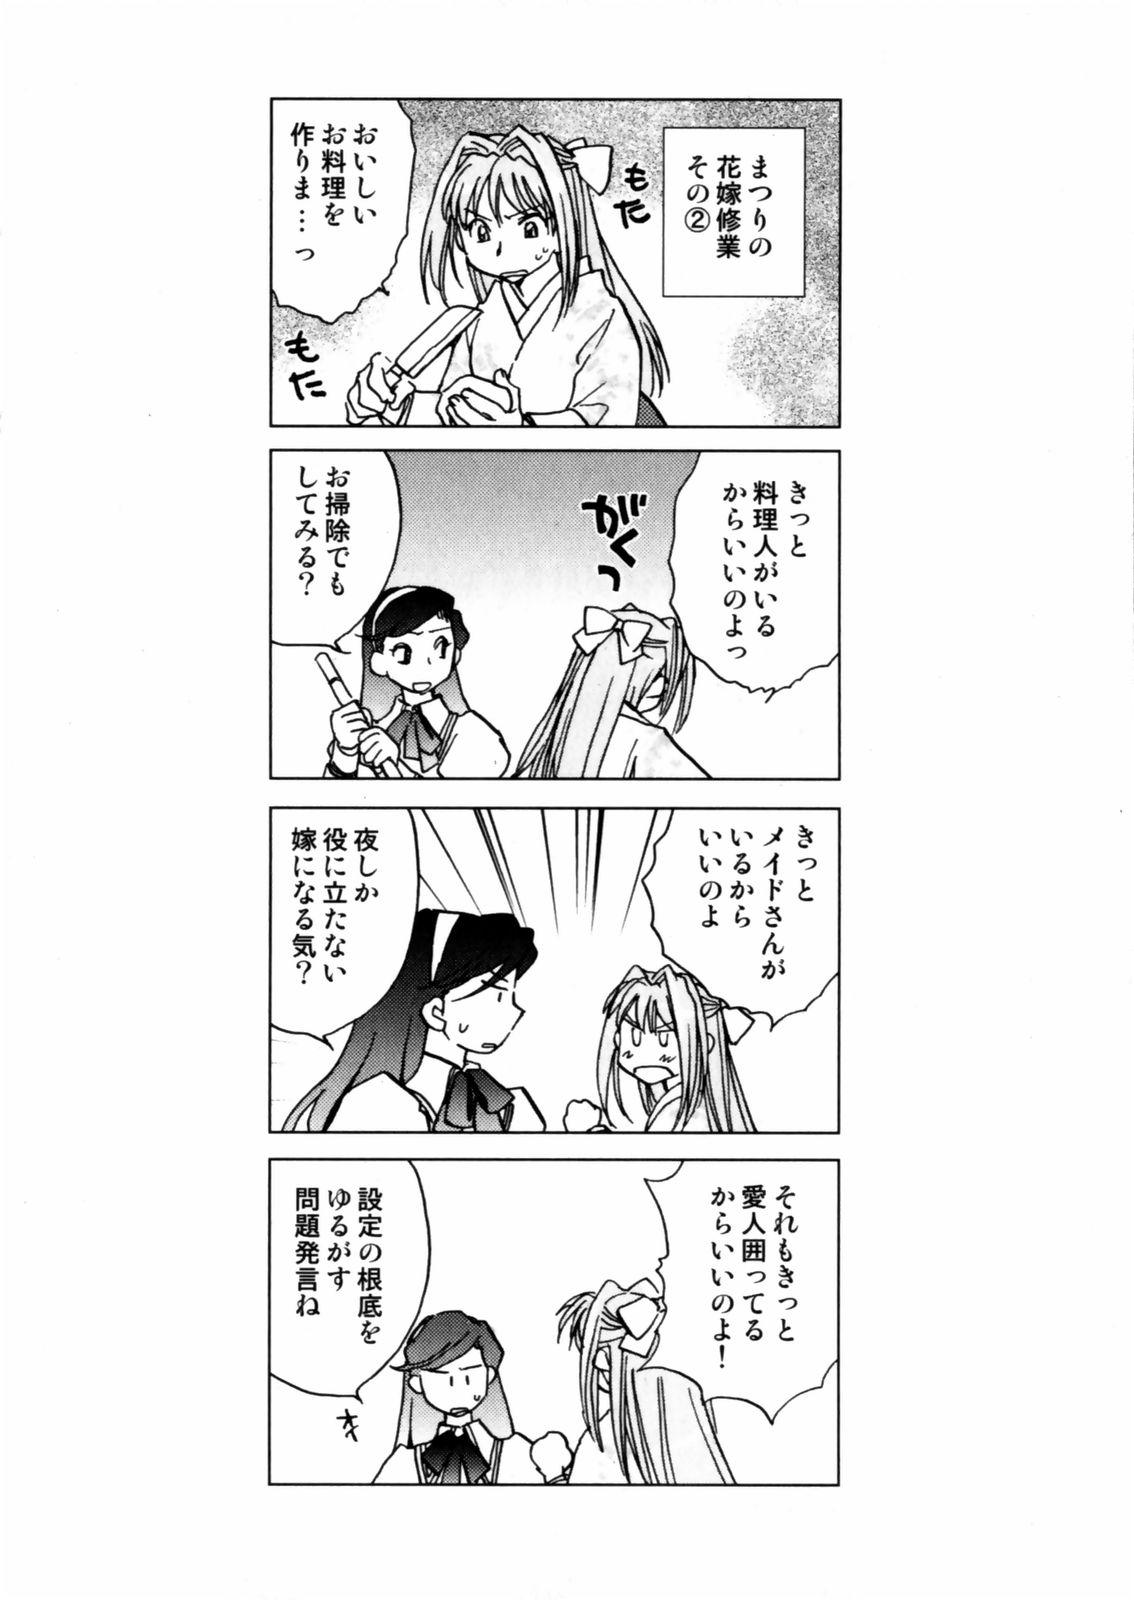 [Okano Ahiru] Hanasake ! Otome Juku (Otome Private Tutoring School) Vol.2 63